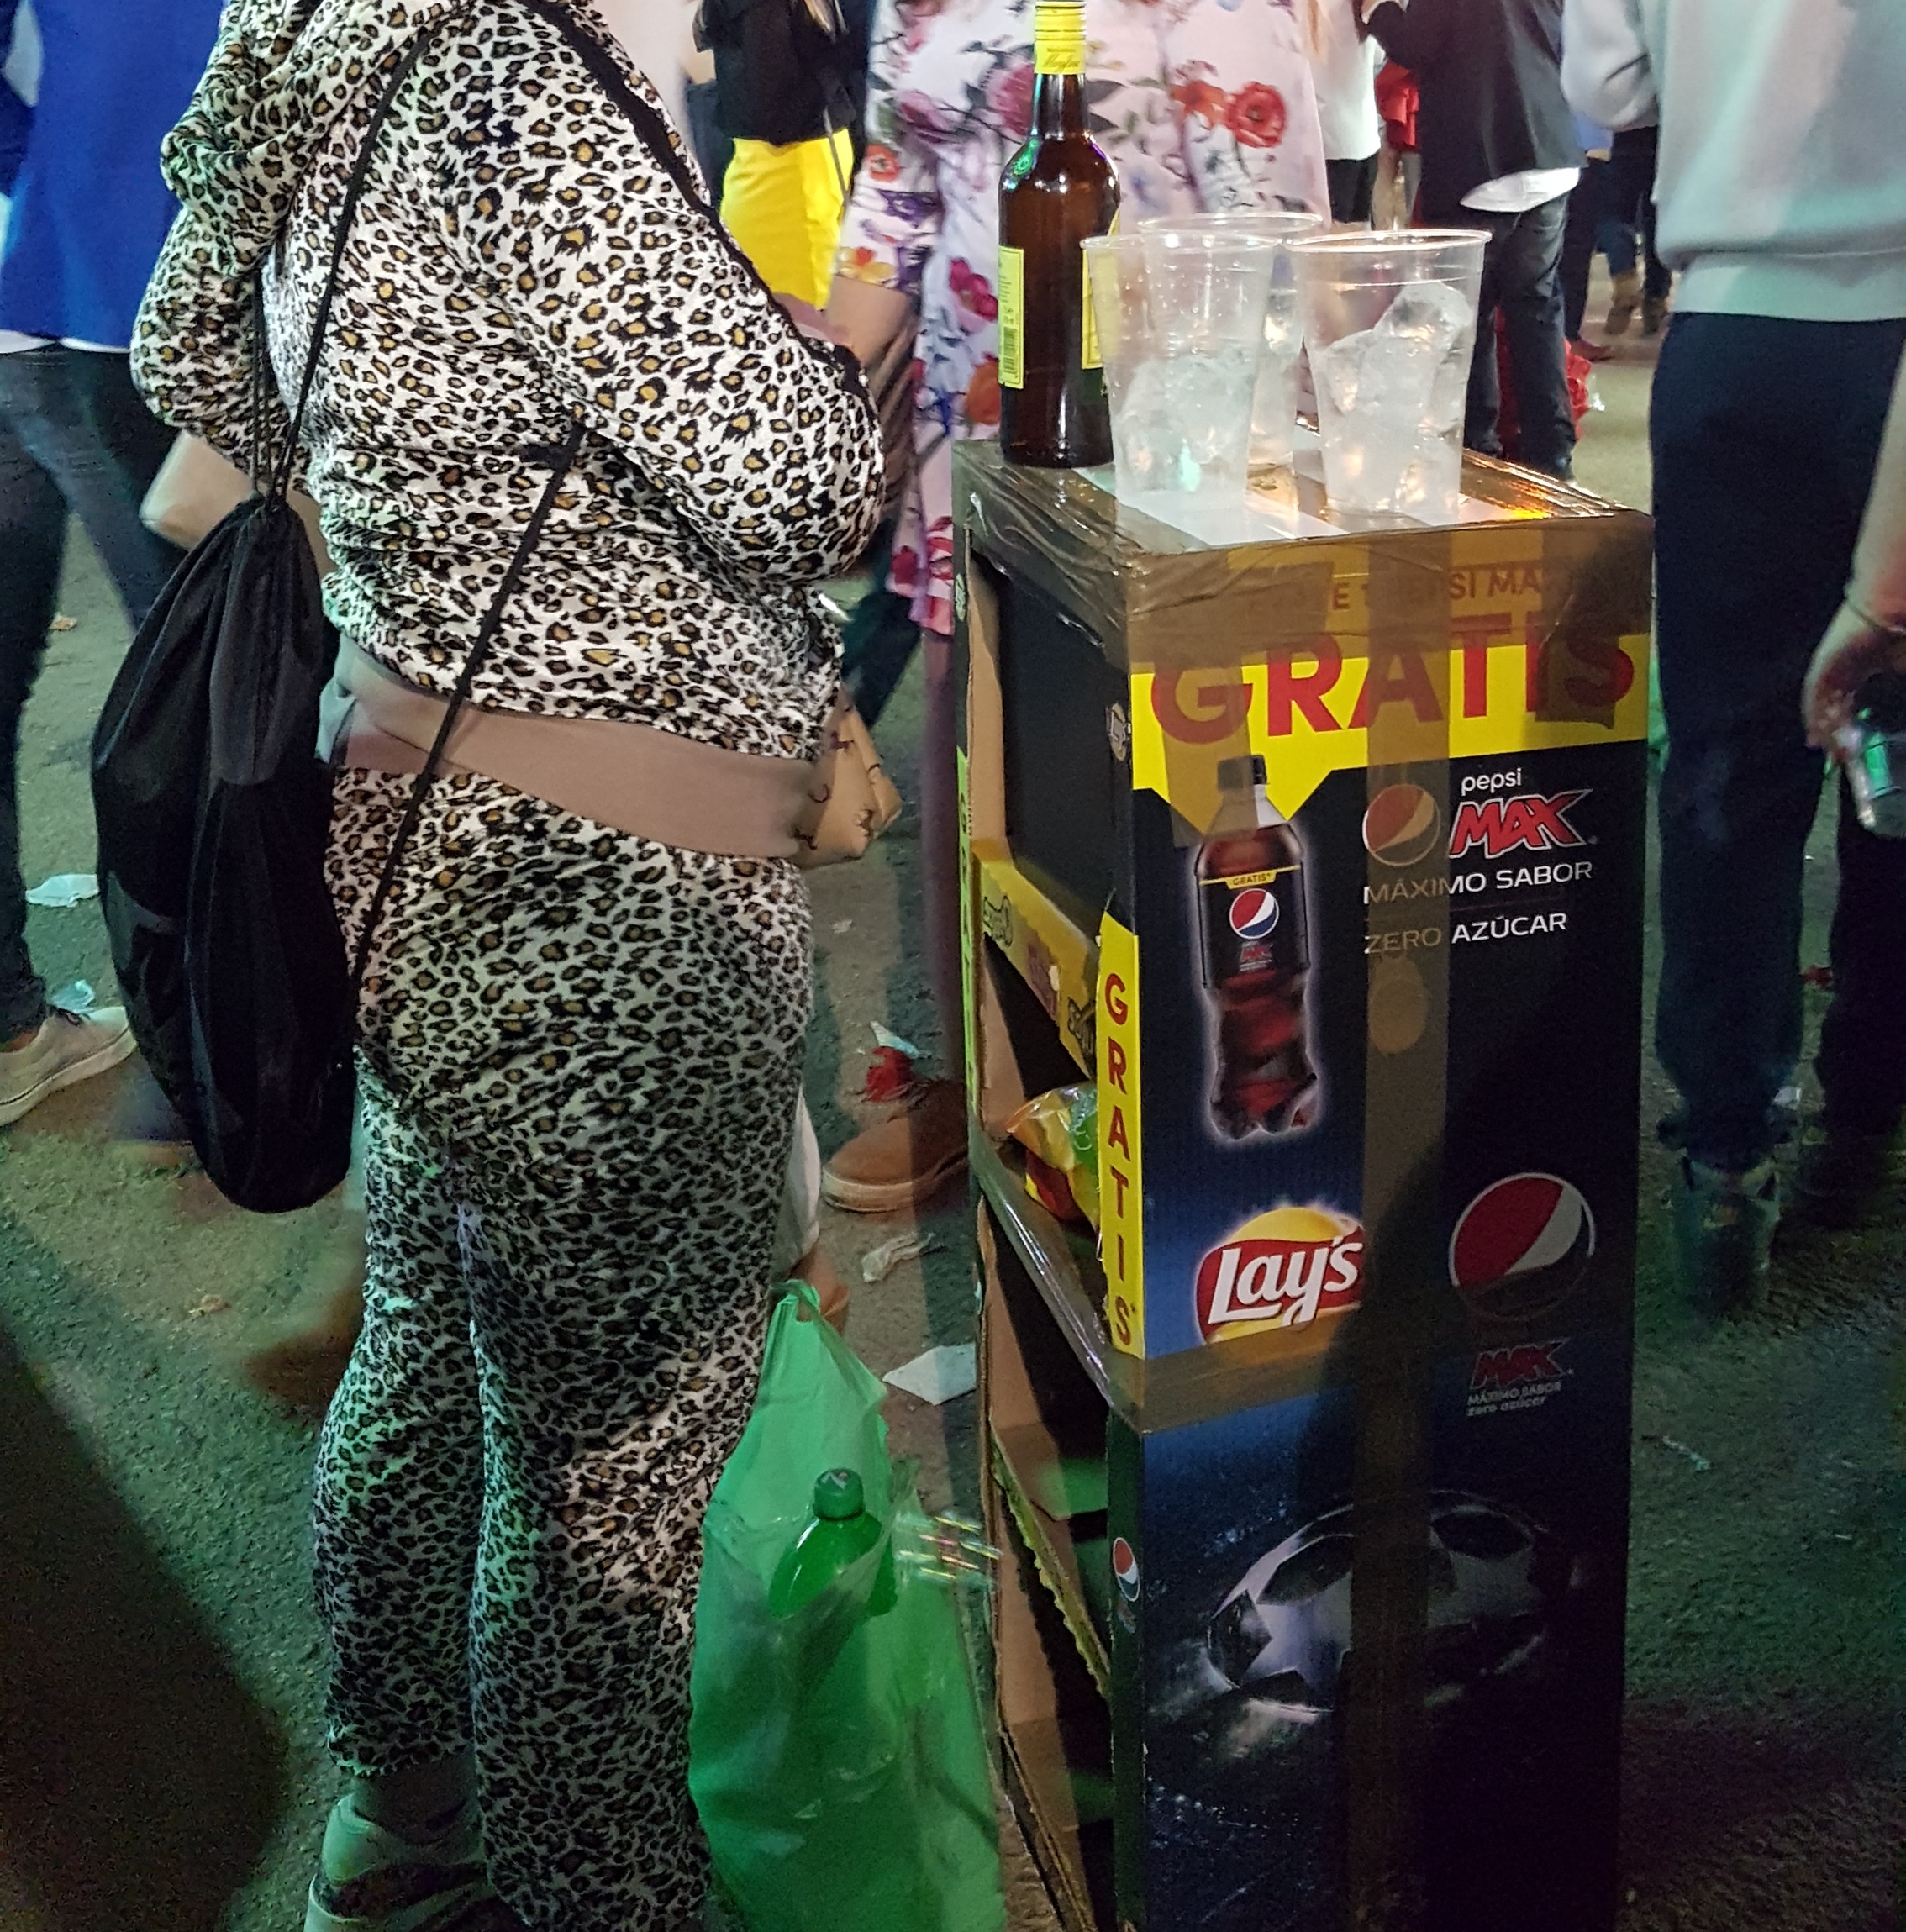 El escaso control del Ayuntamiento ha facilitado la venta de alcohol a menores en la Feria de Sevilla